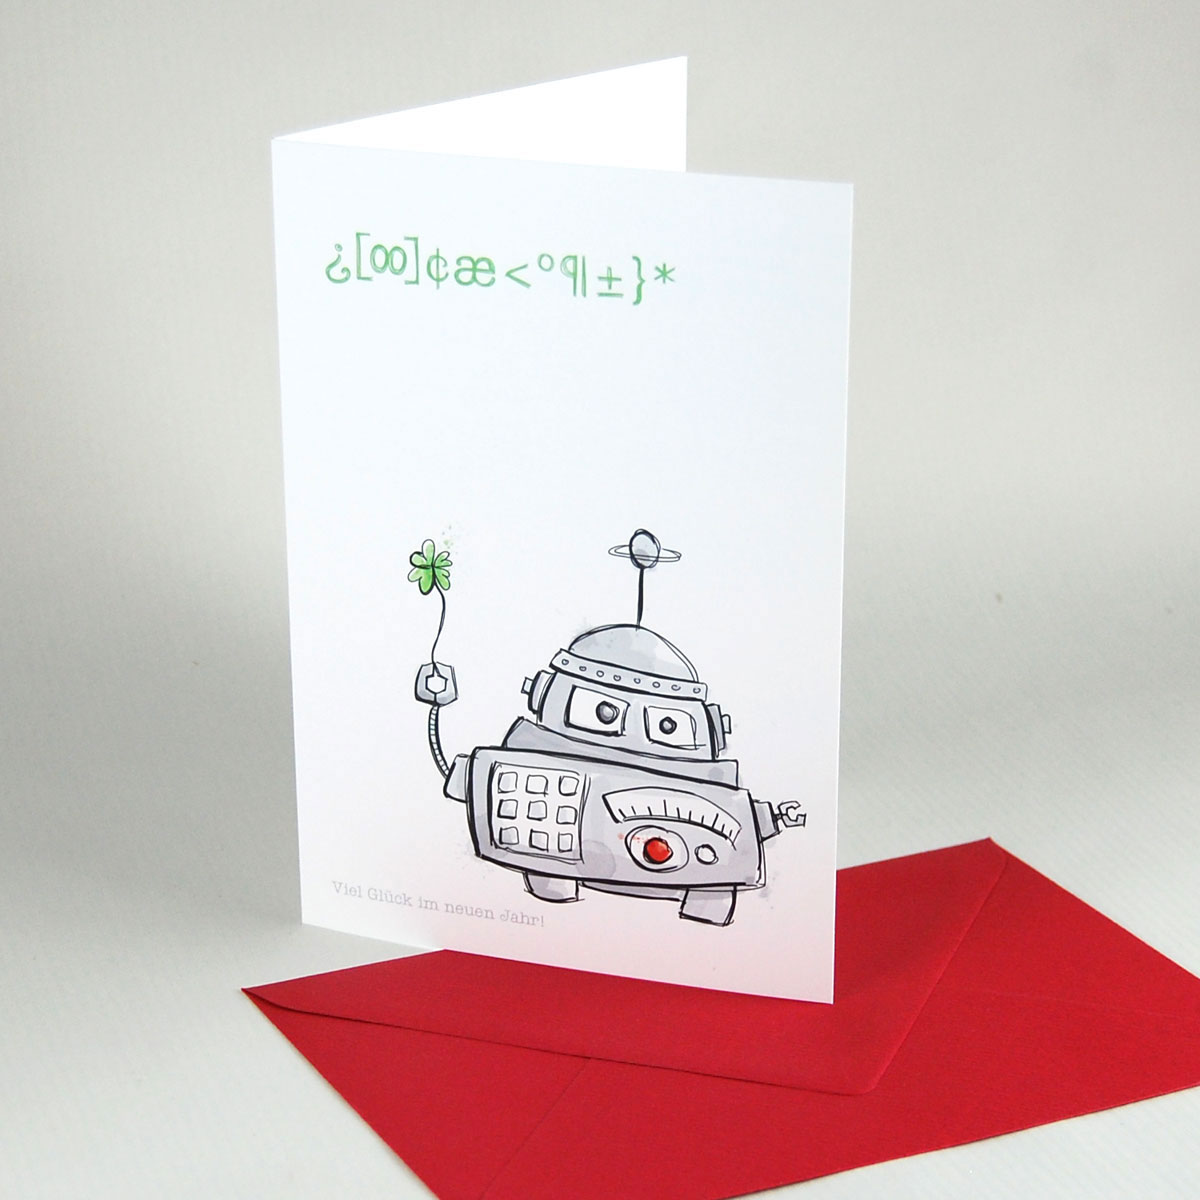 Viel Glück im neuen Jahr! witzige Neujahrskarten mit Roboter und farbigen Umschlägen